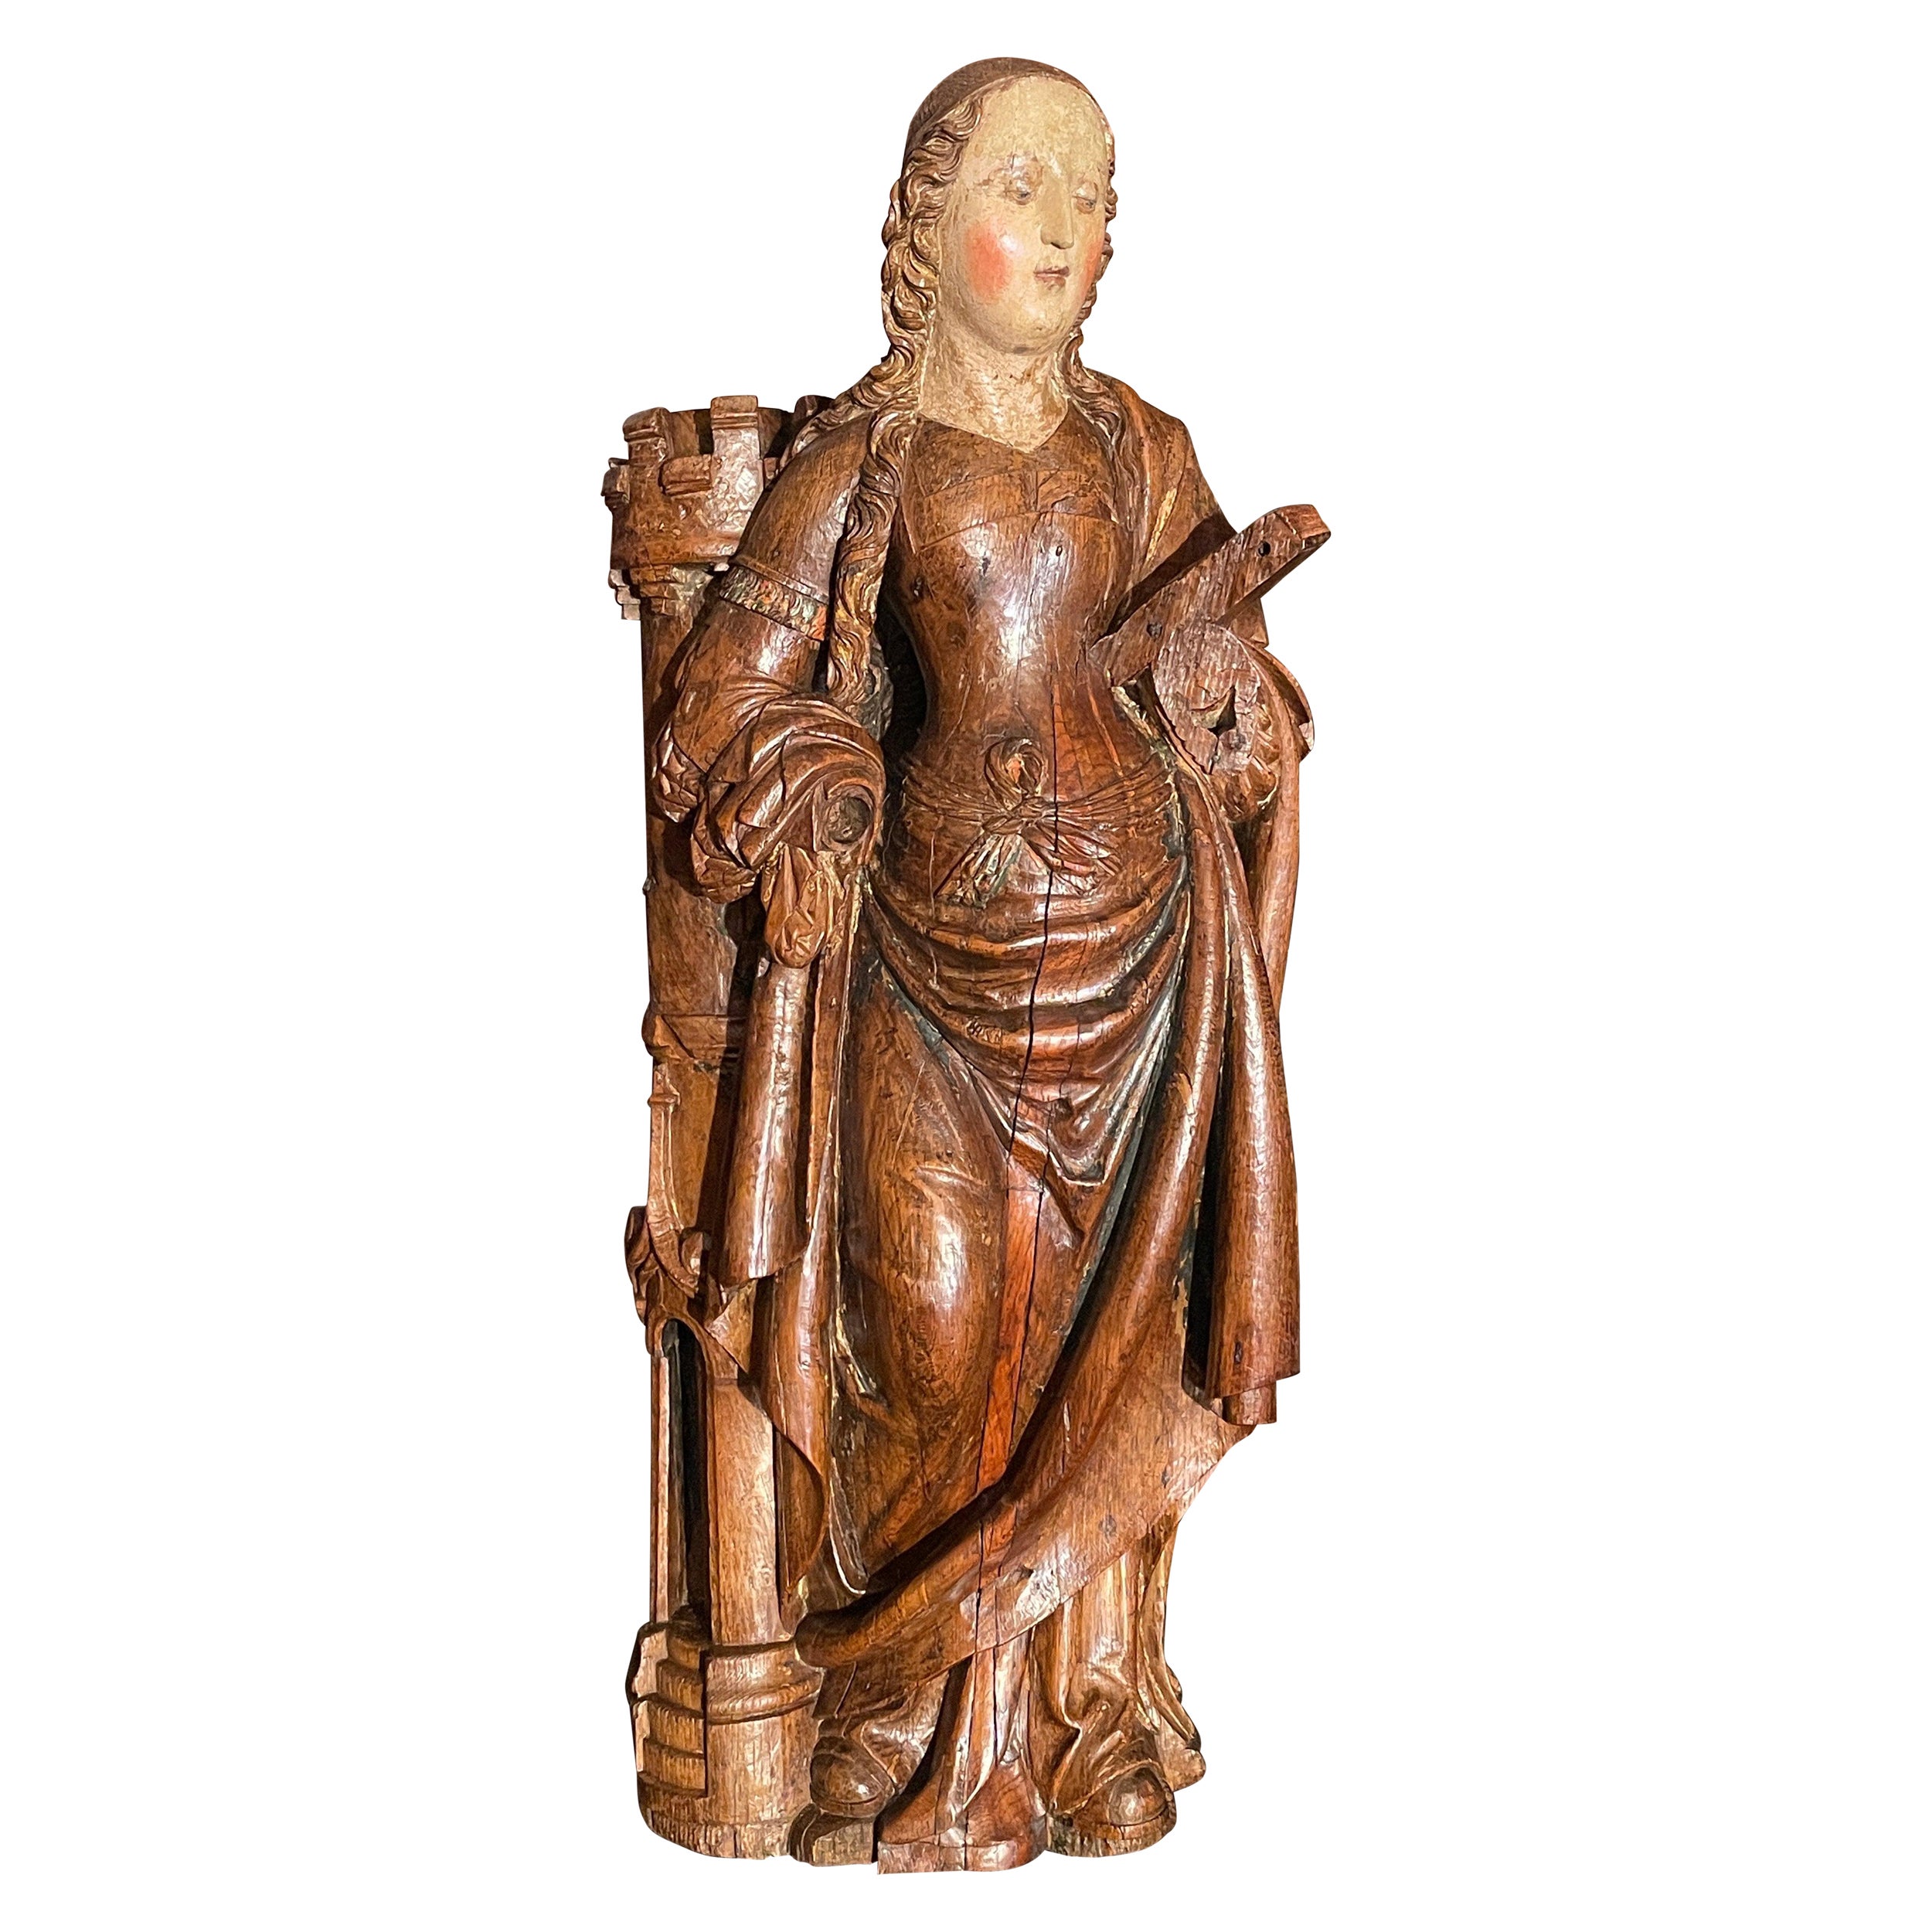 Wichtige Skulptur, die Heilige Barbara darstellt